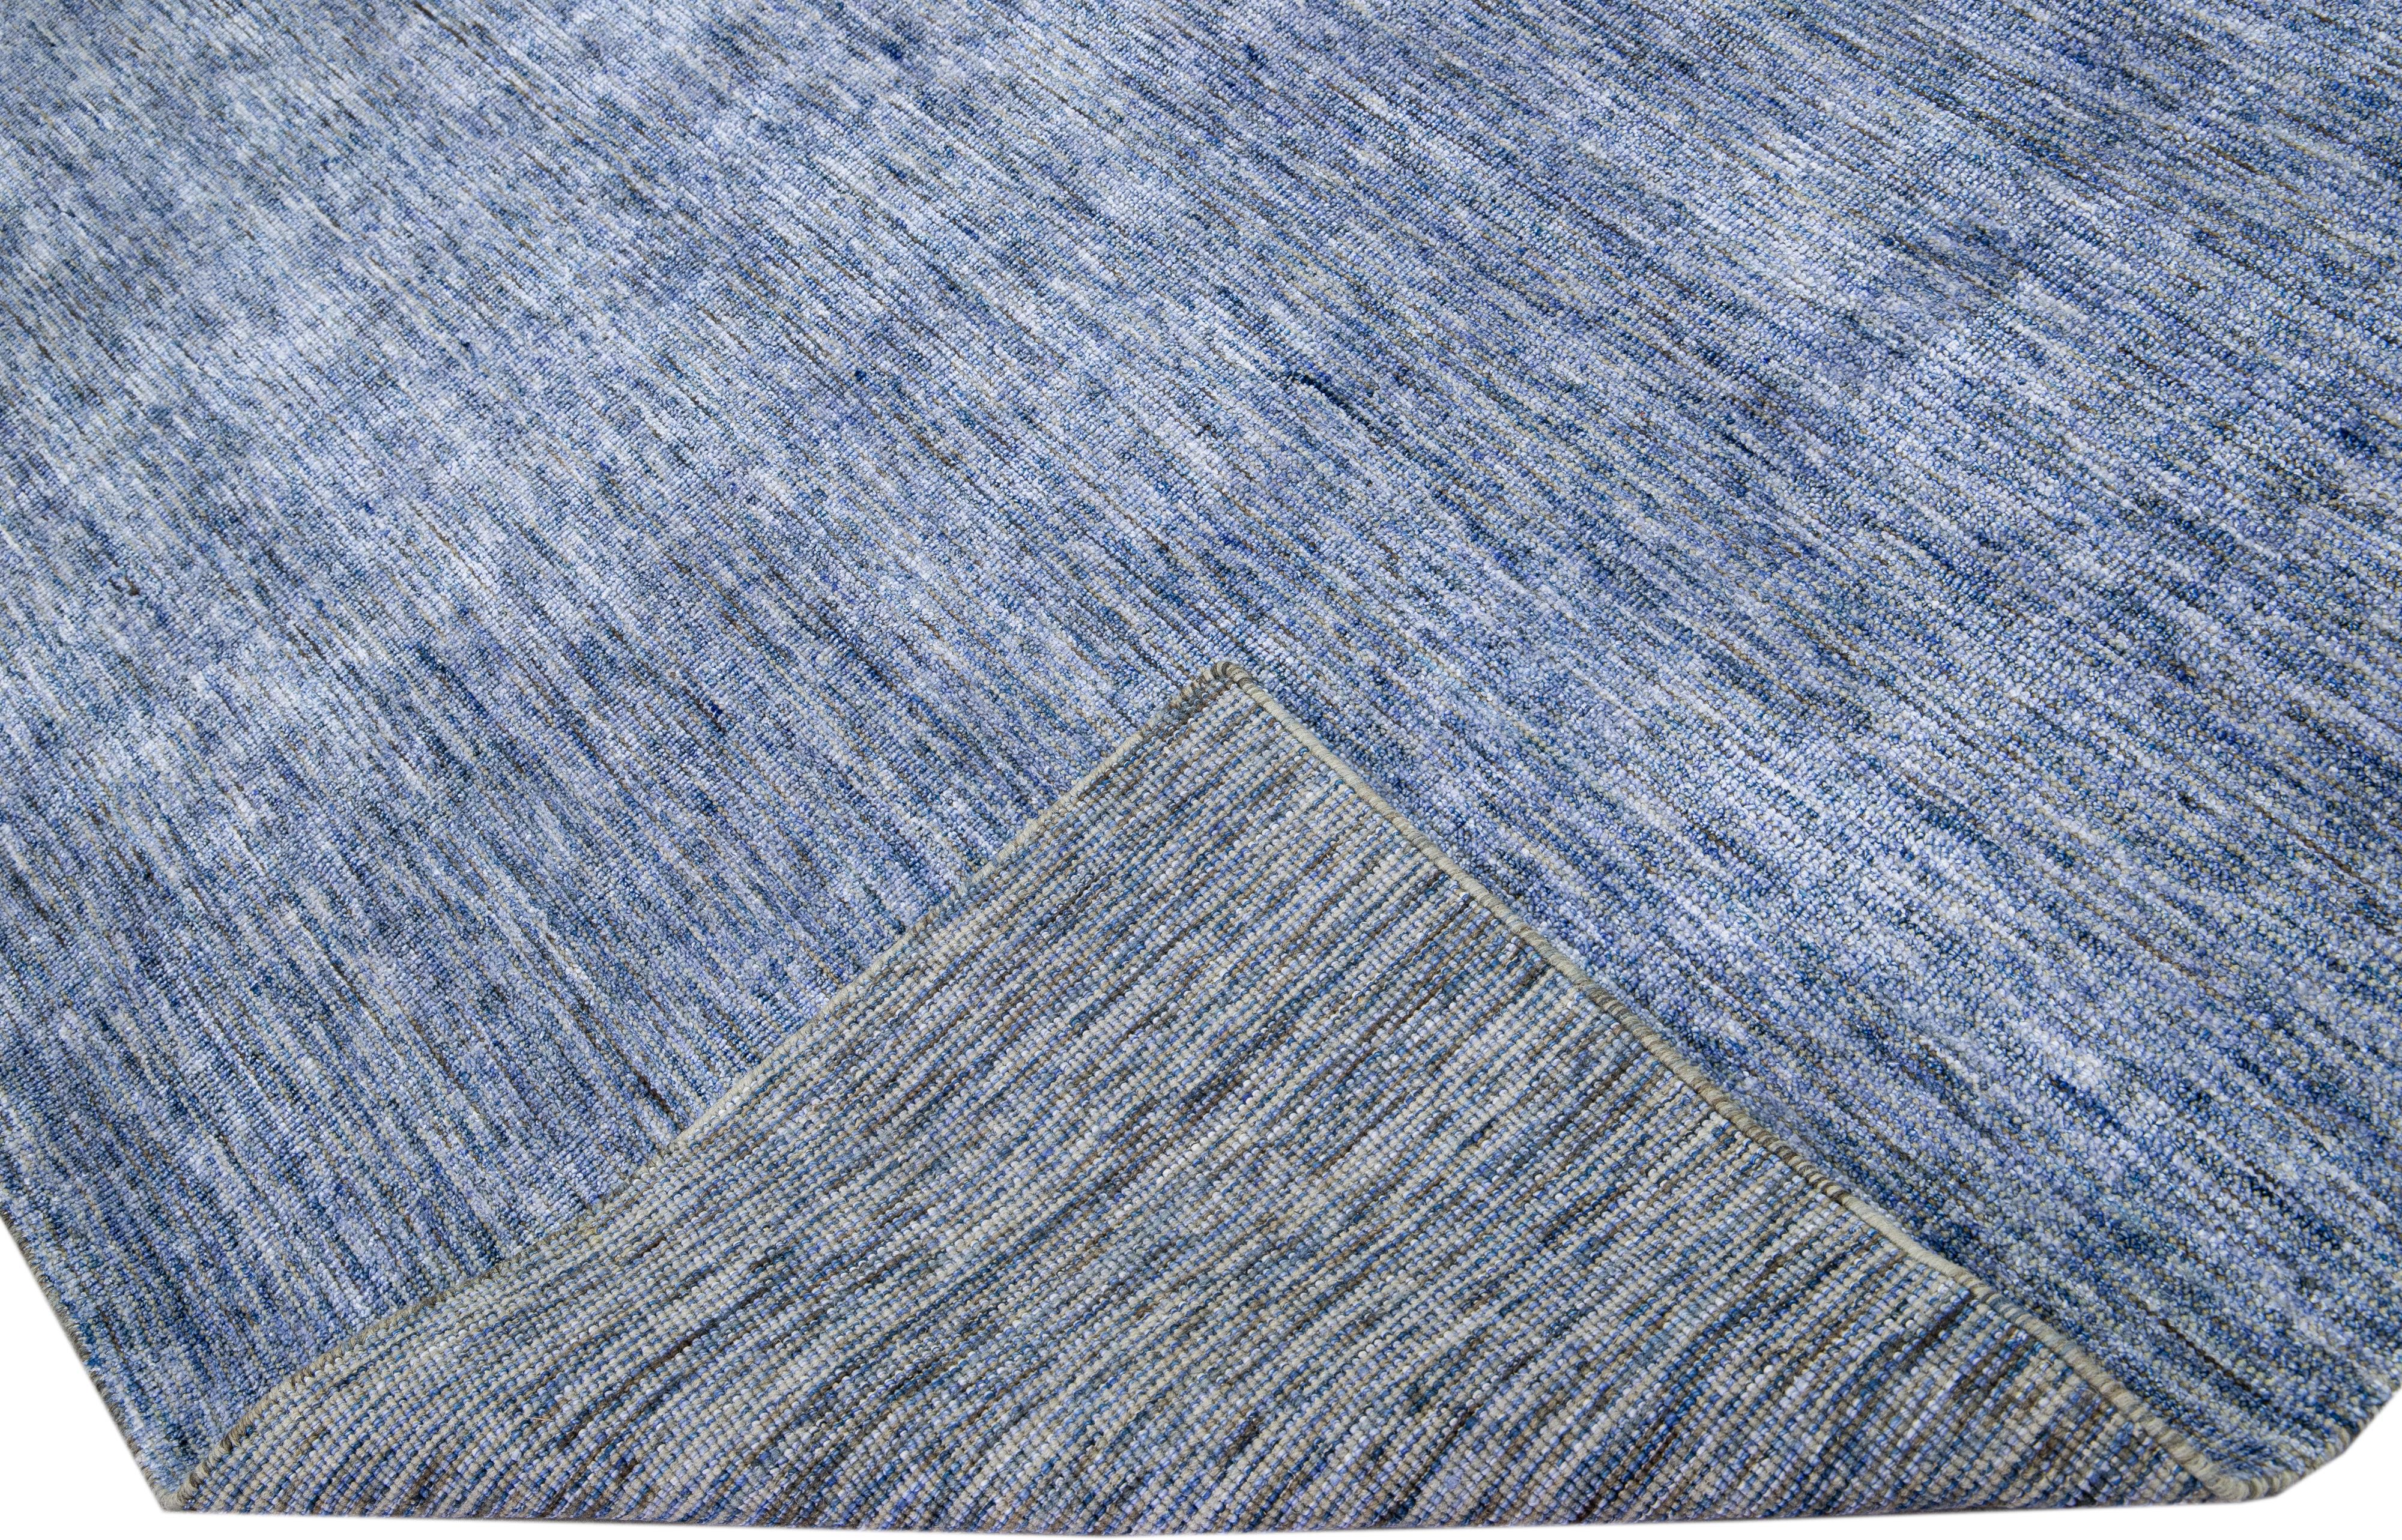 Schöner handgefertigter indischer Rillenteppich aus Bambus und Seide von Apadanas mit blauem Feld. Dieser Teppich aus der Groove-Kollektion hat ein durchgängig unifarbenes Muster.

Dieser Teppich misst: 9' x 12'.

Kundenspezifische Farben und